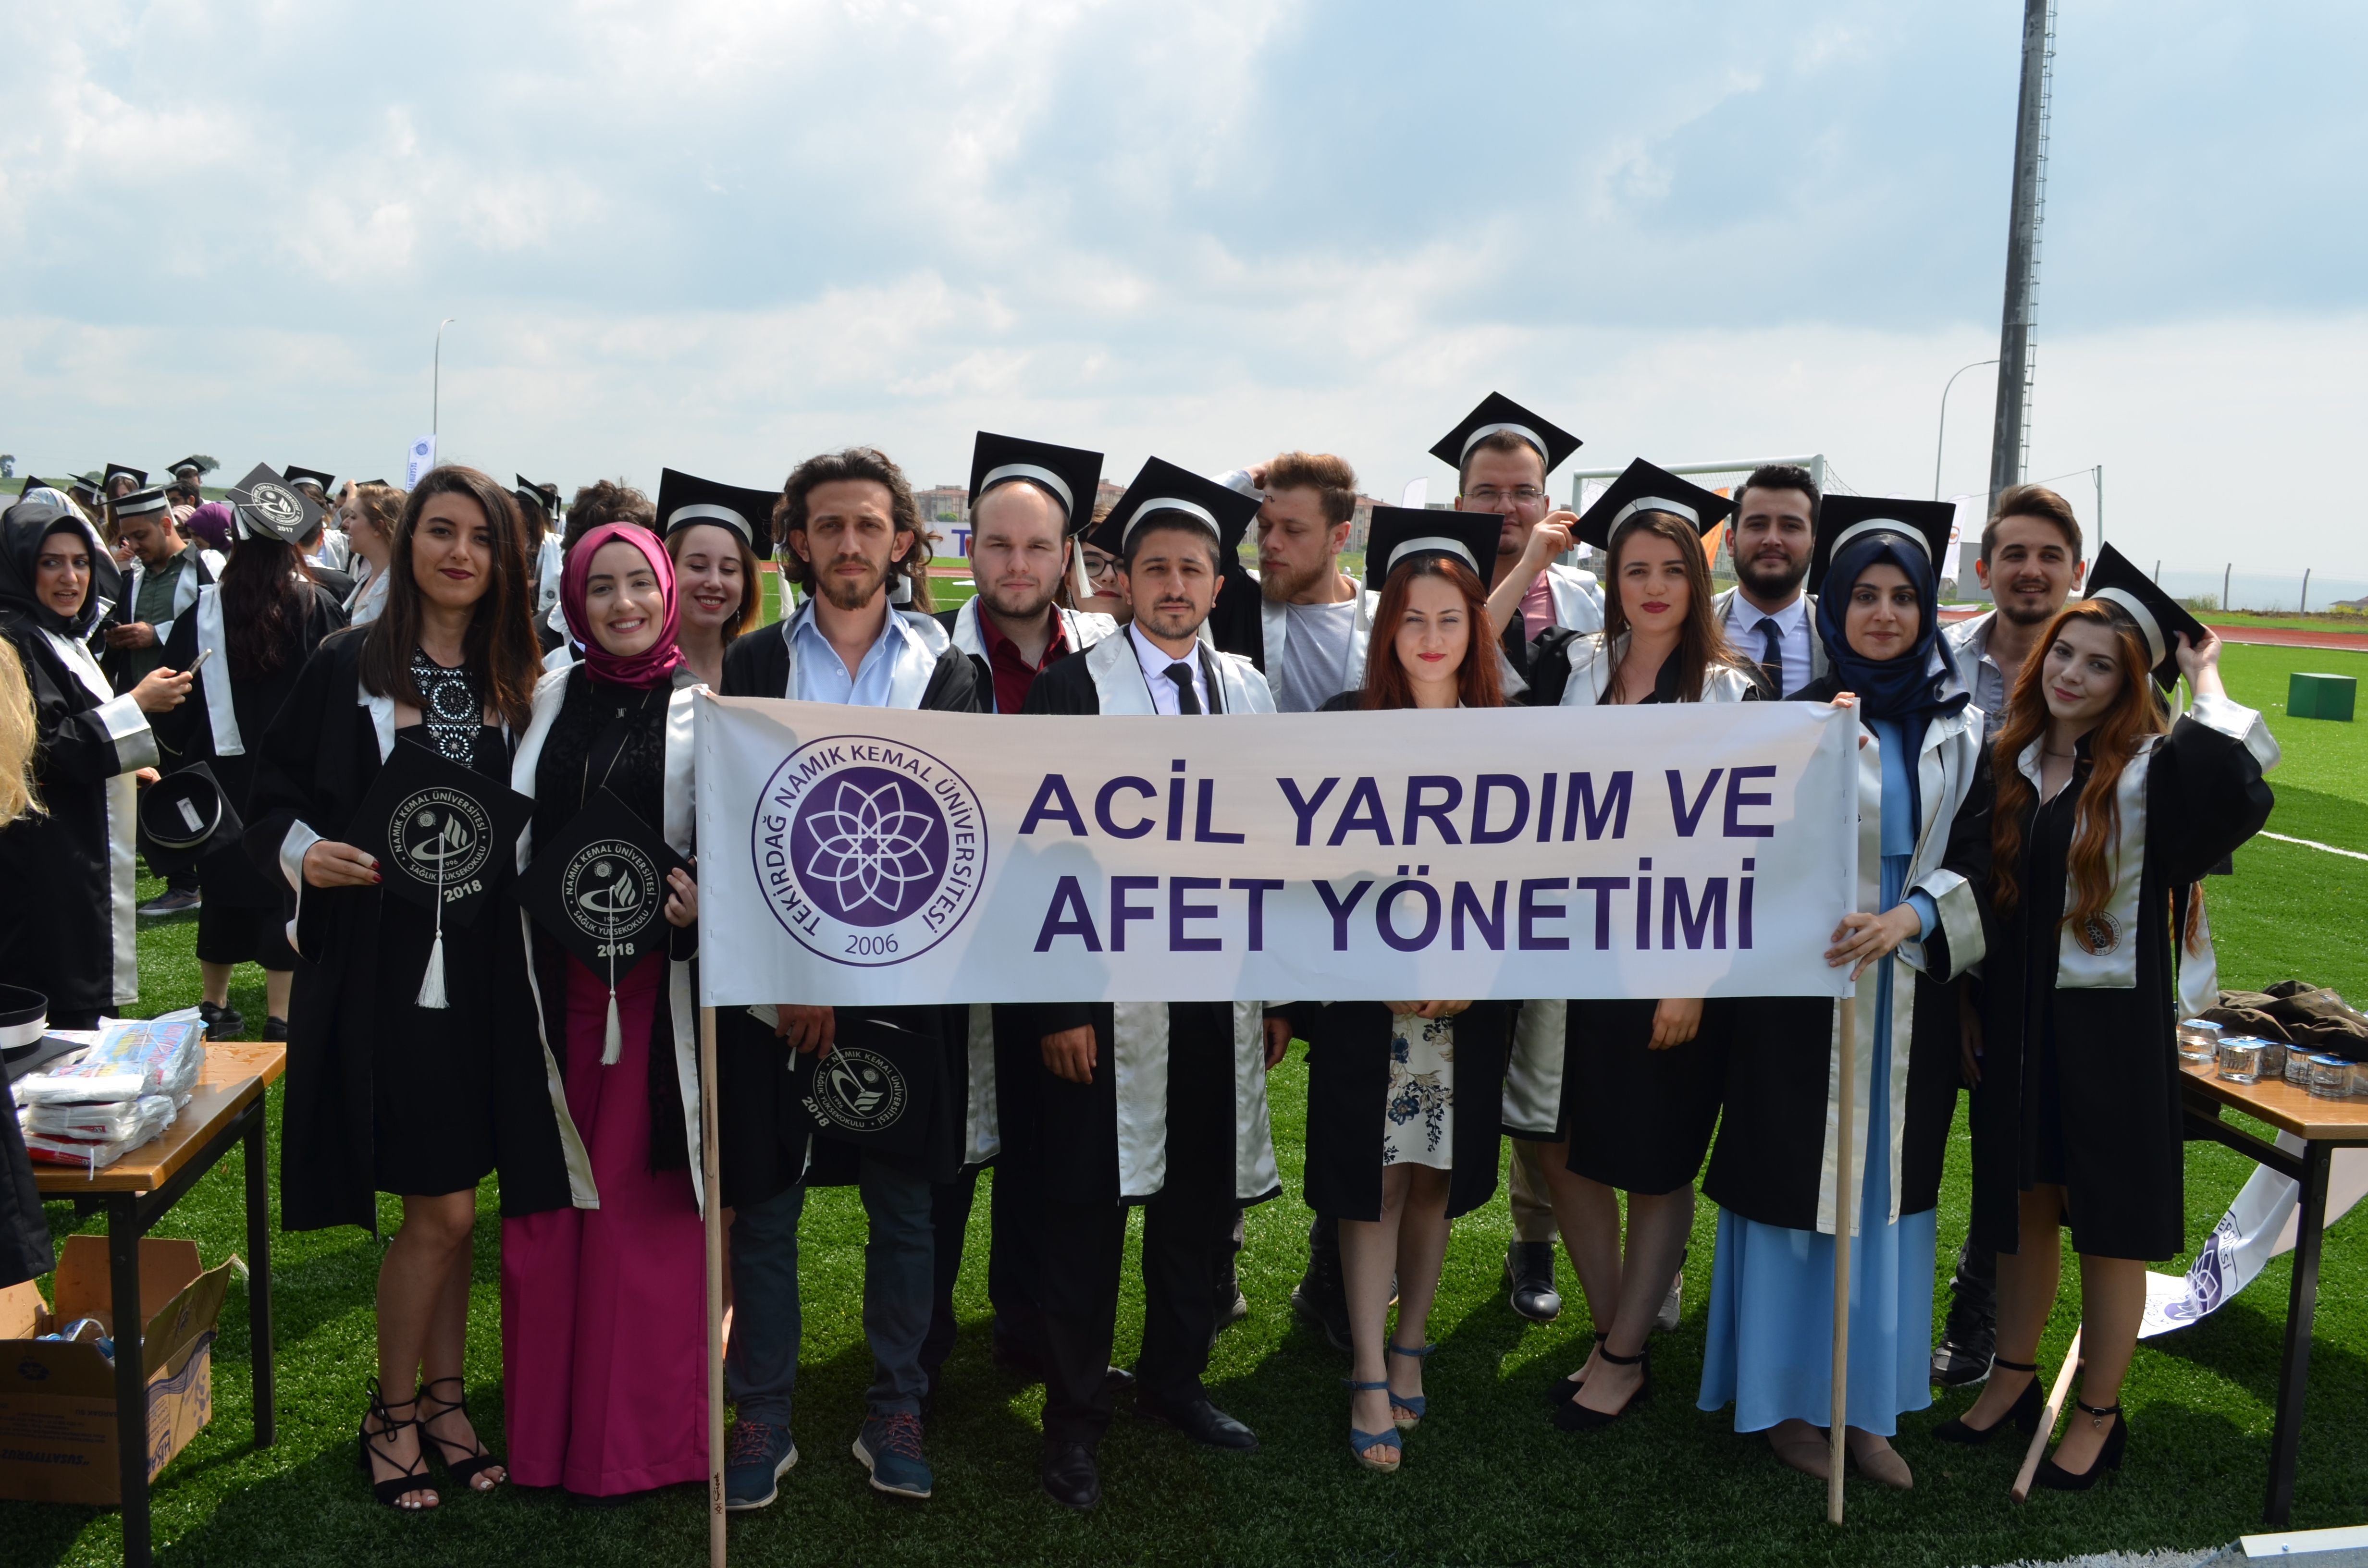 Namık Kemal Üniversitesi31